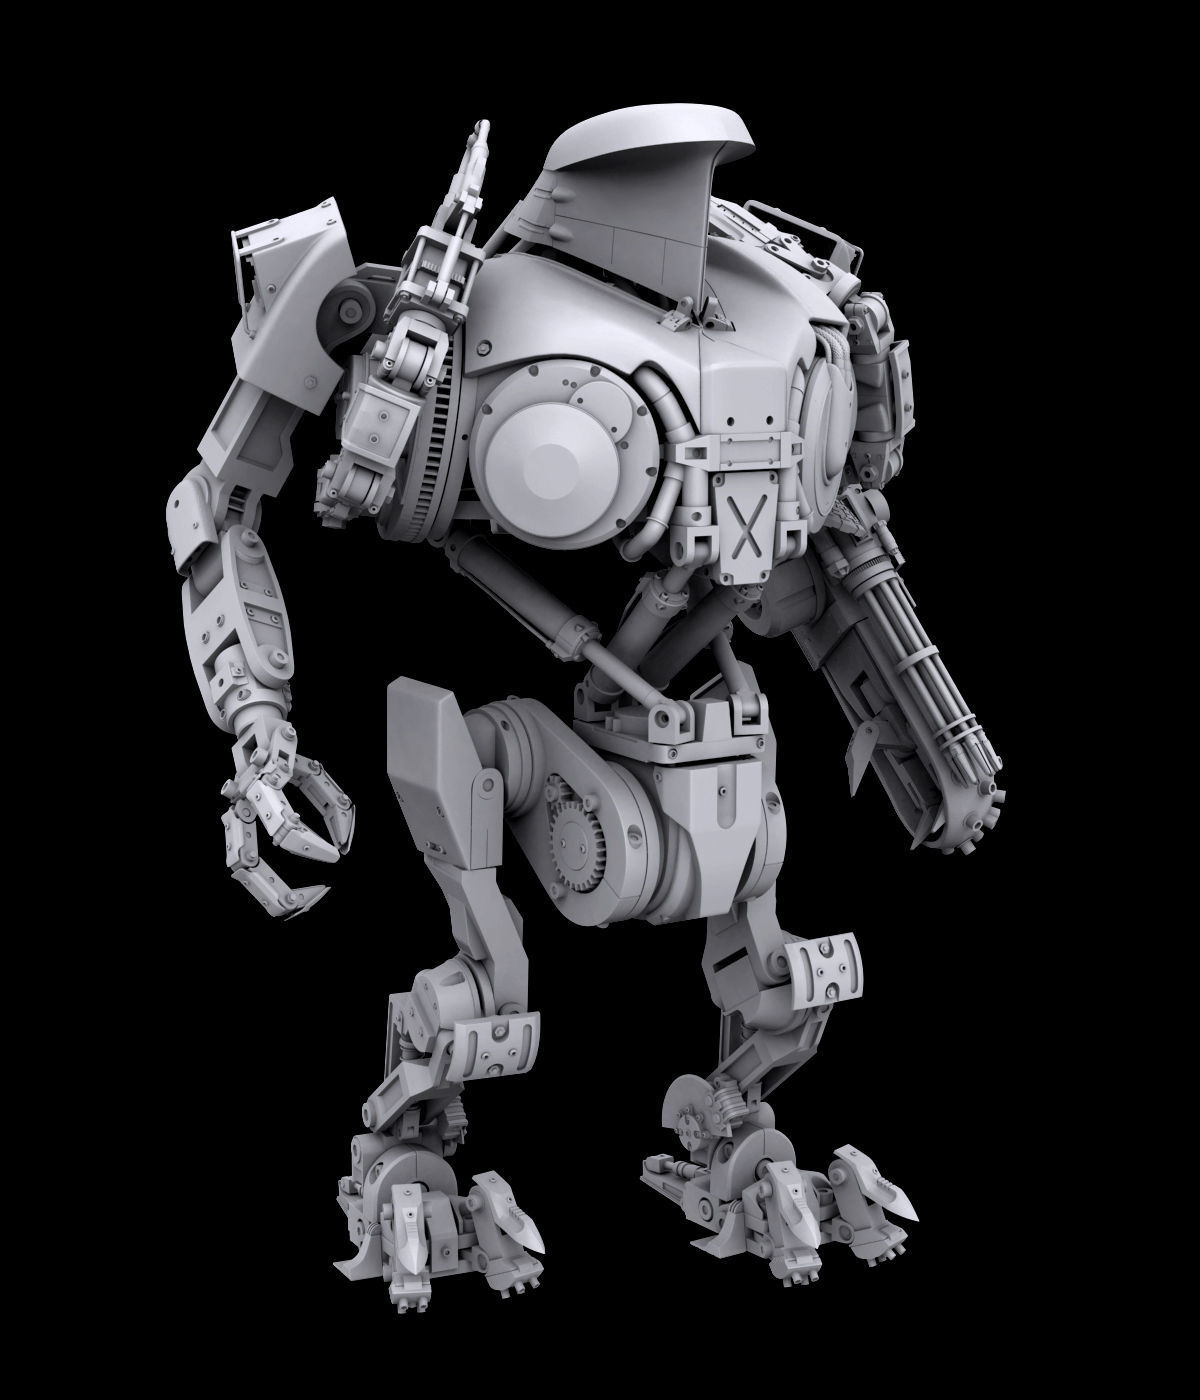 Robocop 2 movie Cain action figure 3D Model STL File for CNC Router La…